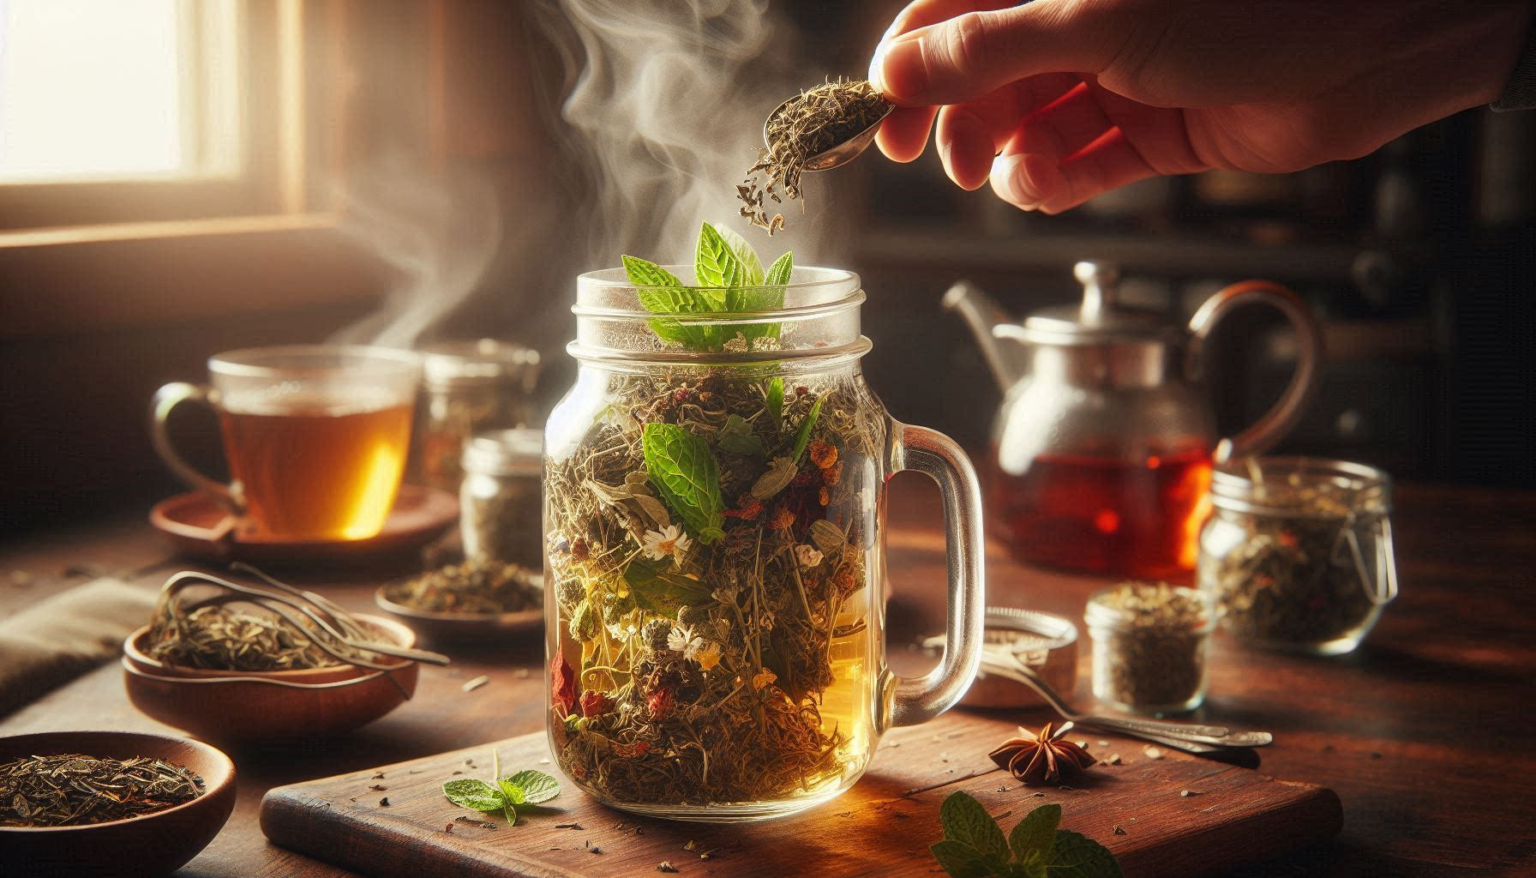 Brew herbal tea effortlessly using a mason jar